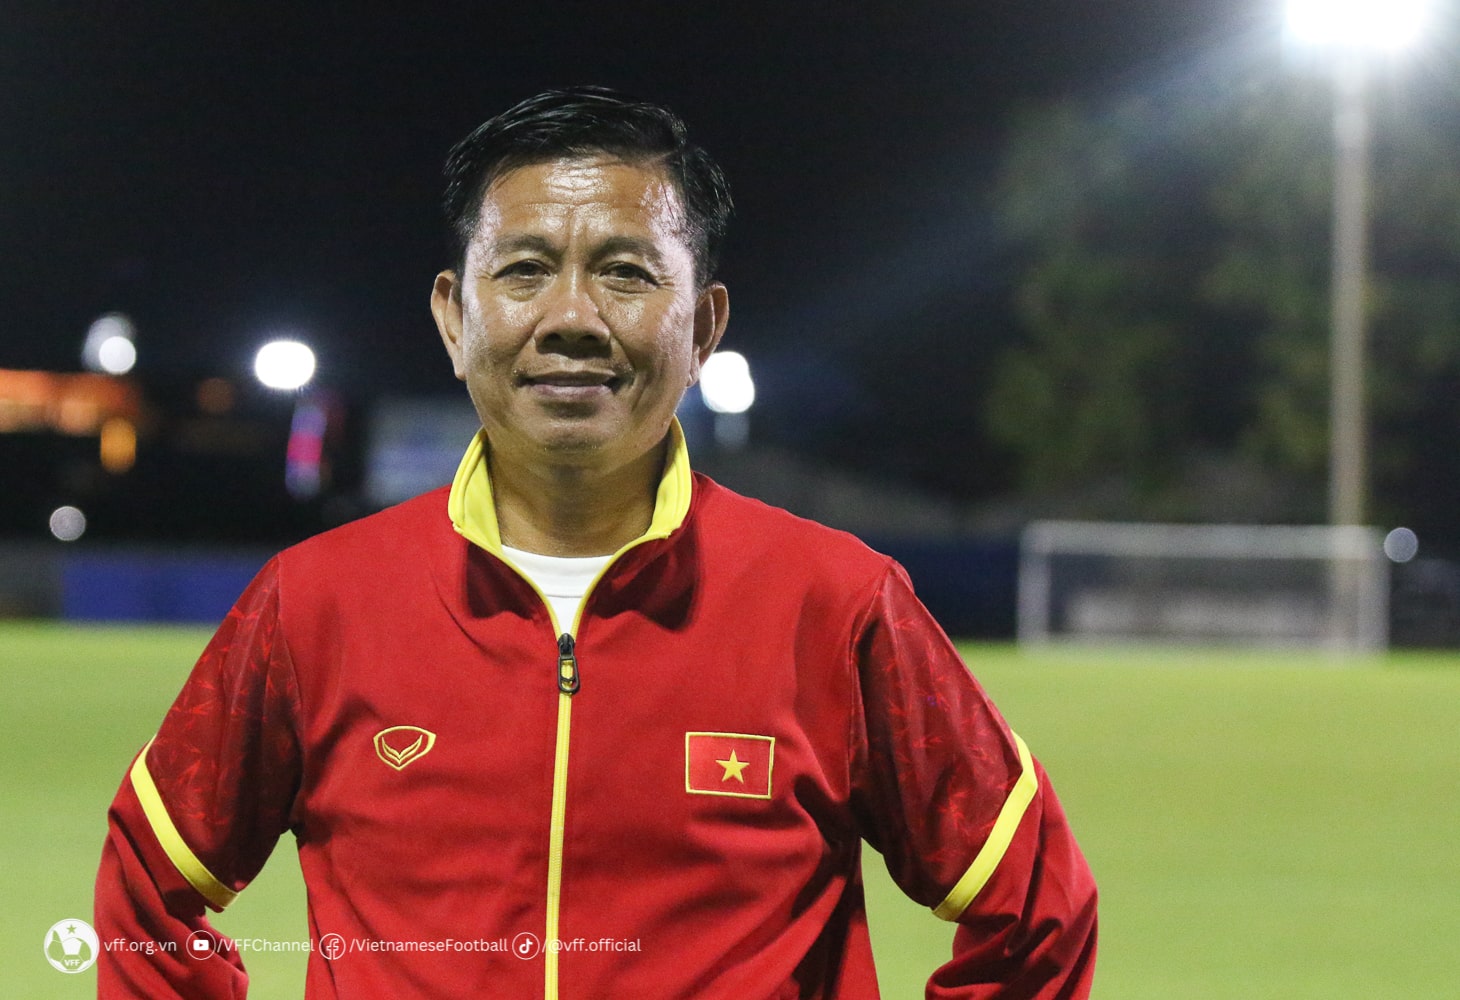 HLV U23 Việt Nam không bận tâm đến kết quả khi thua U23 Bahrain 313918